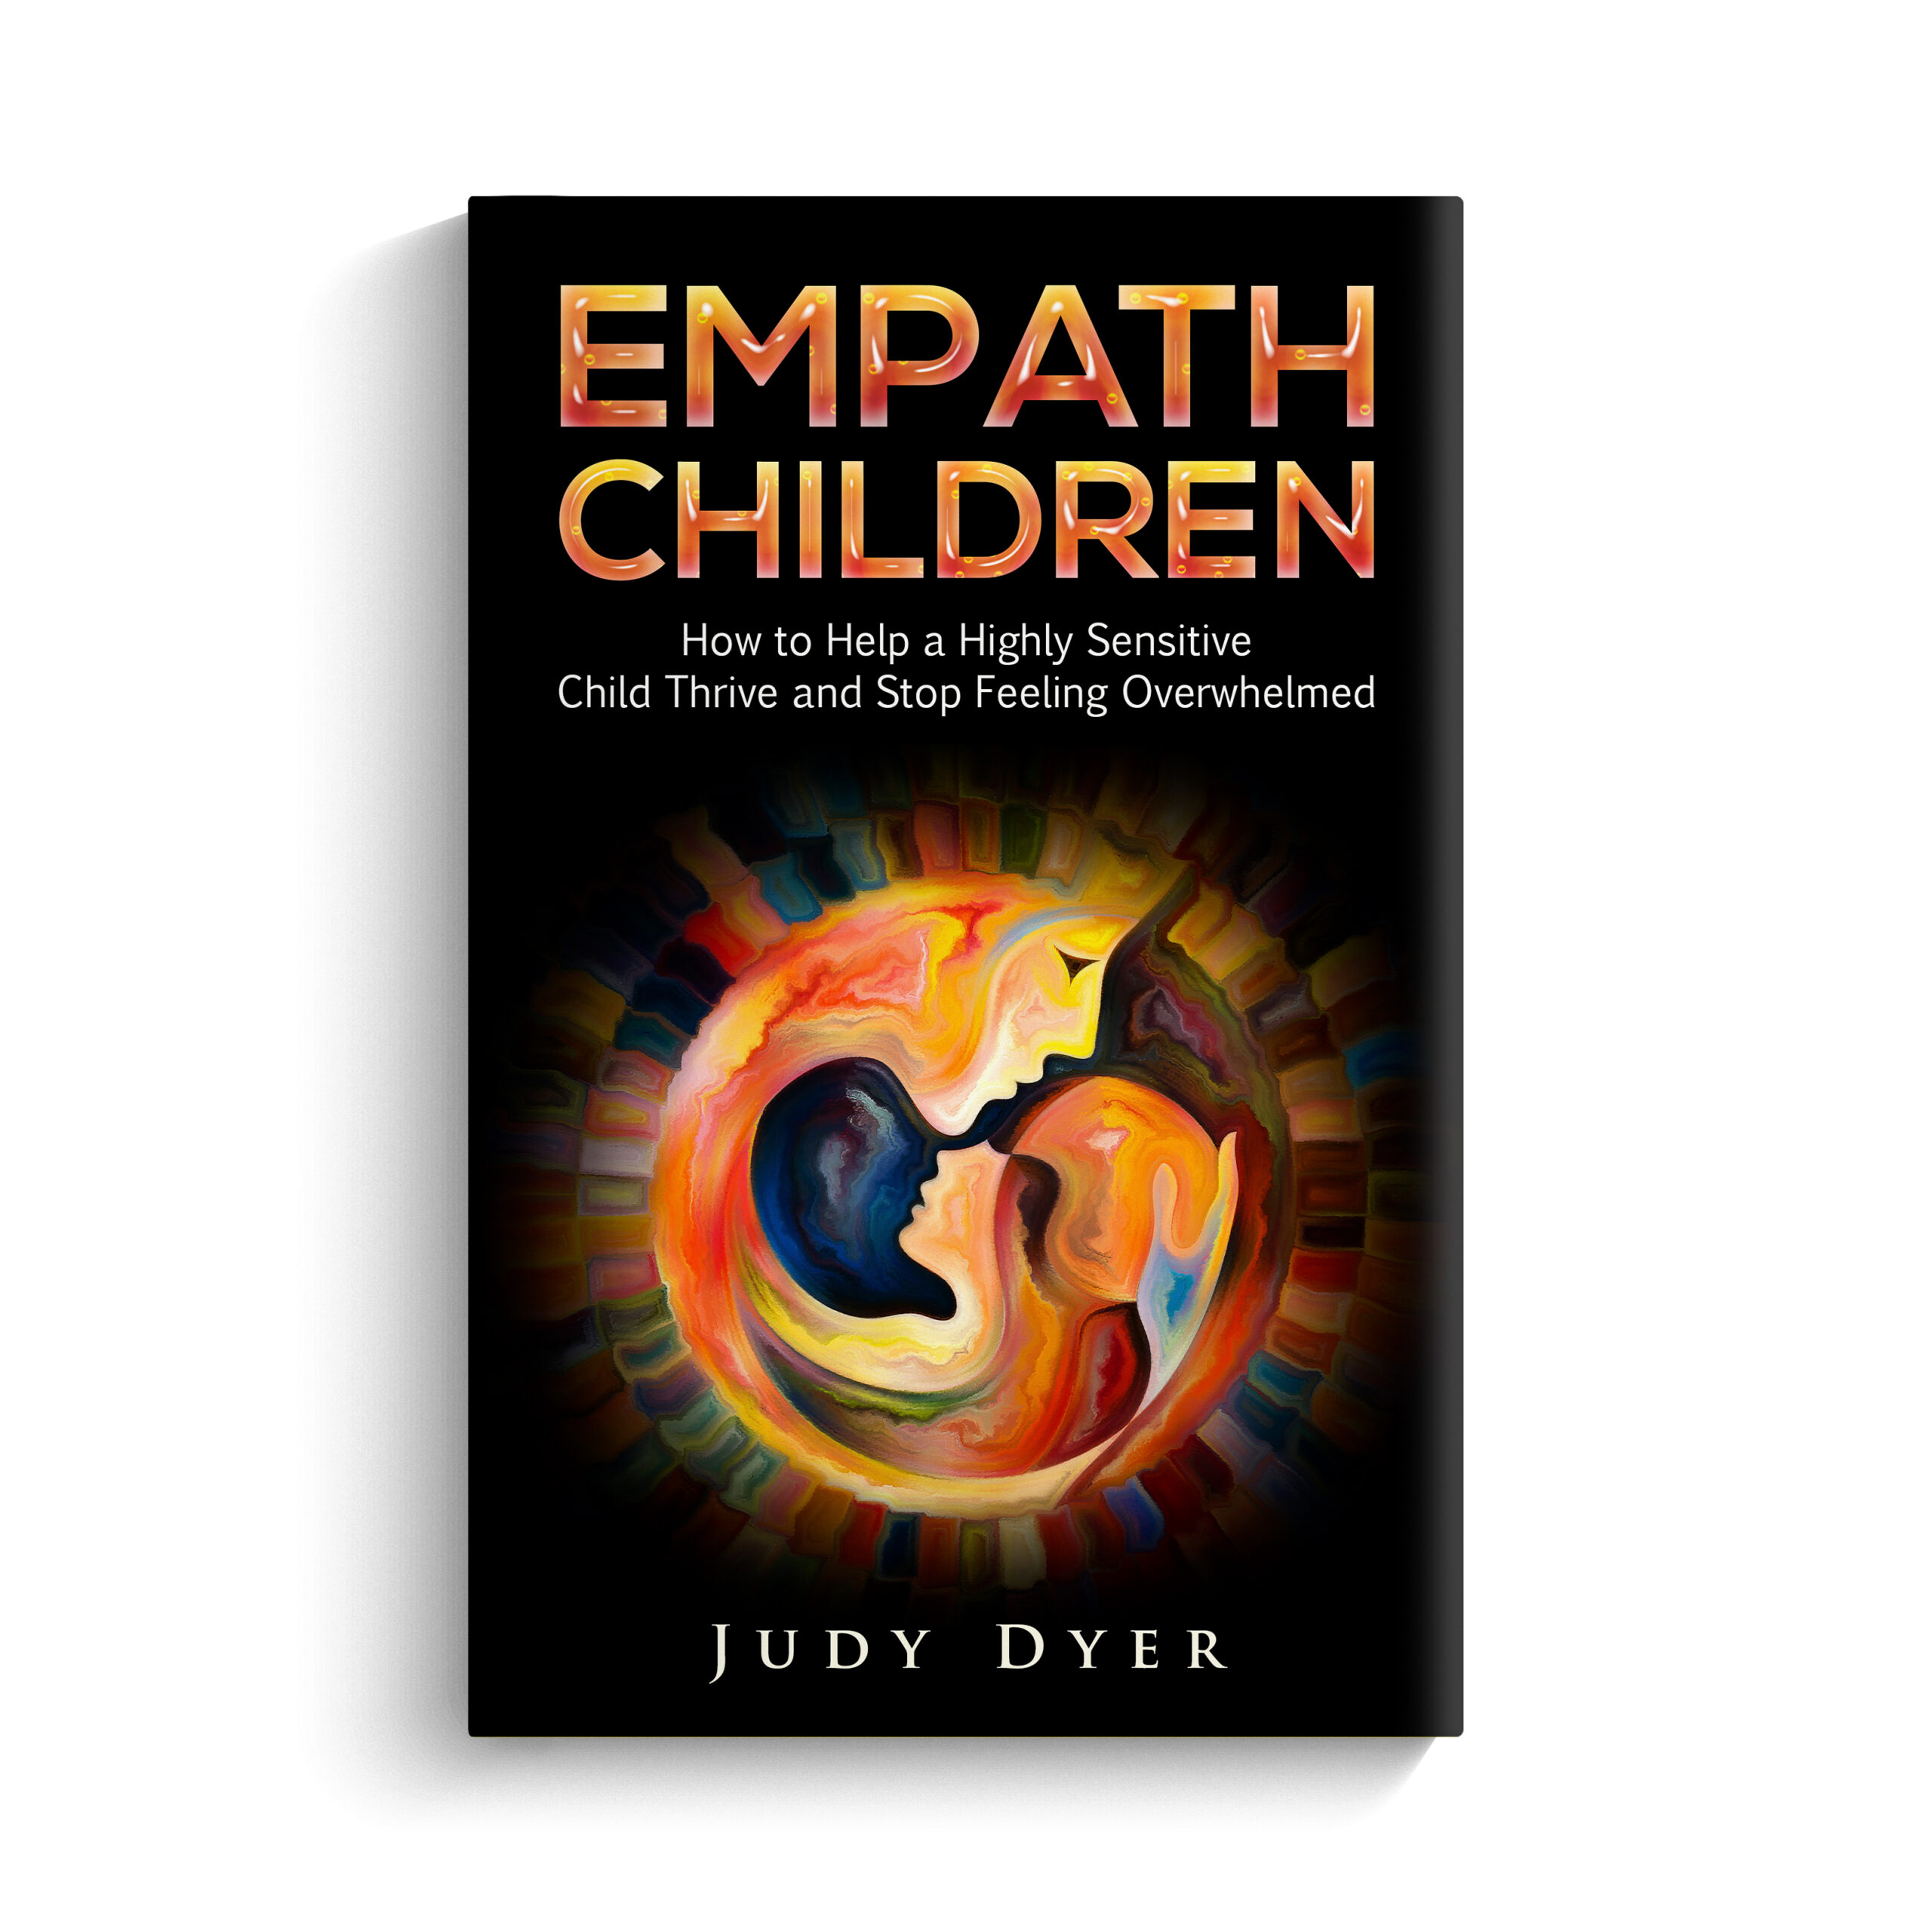 Empath Children by Judy Dyer